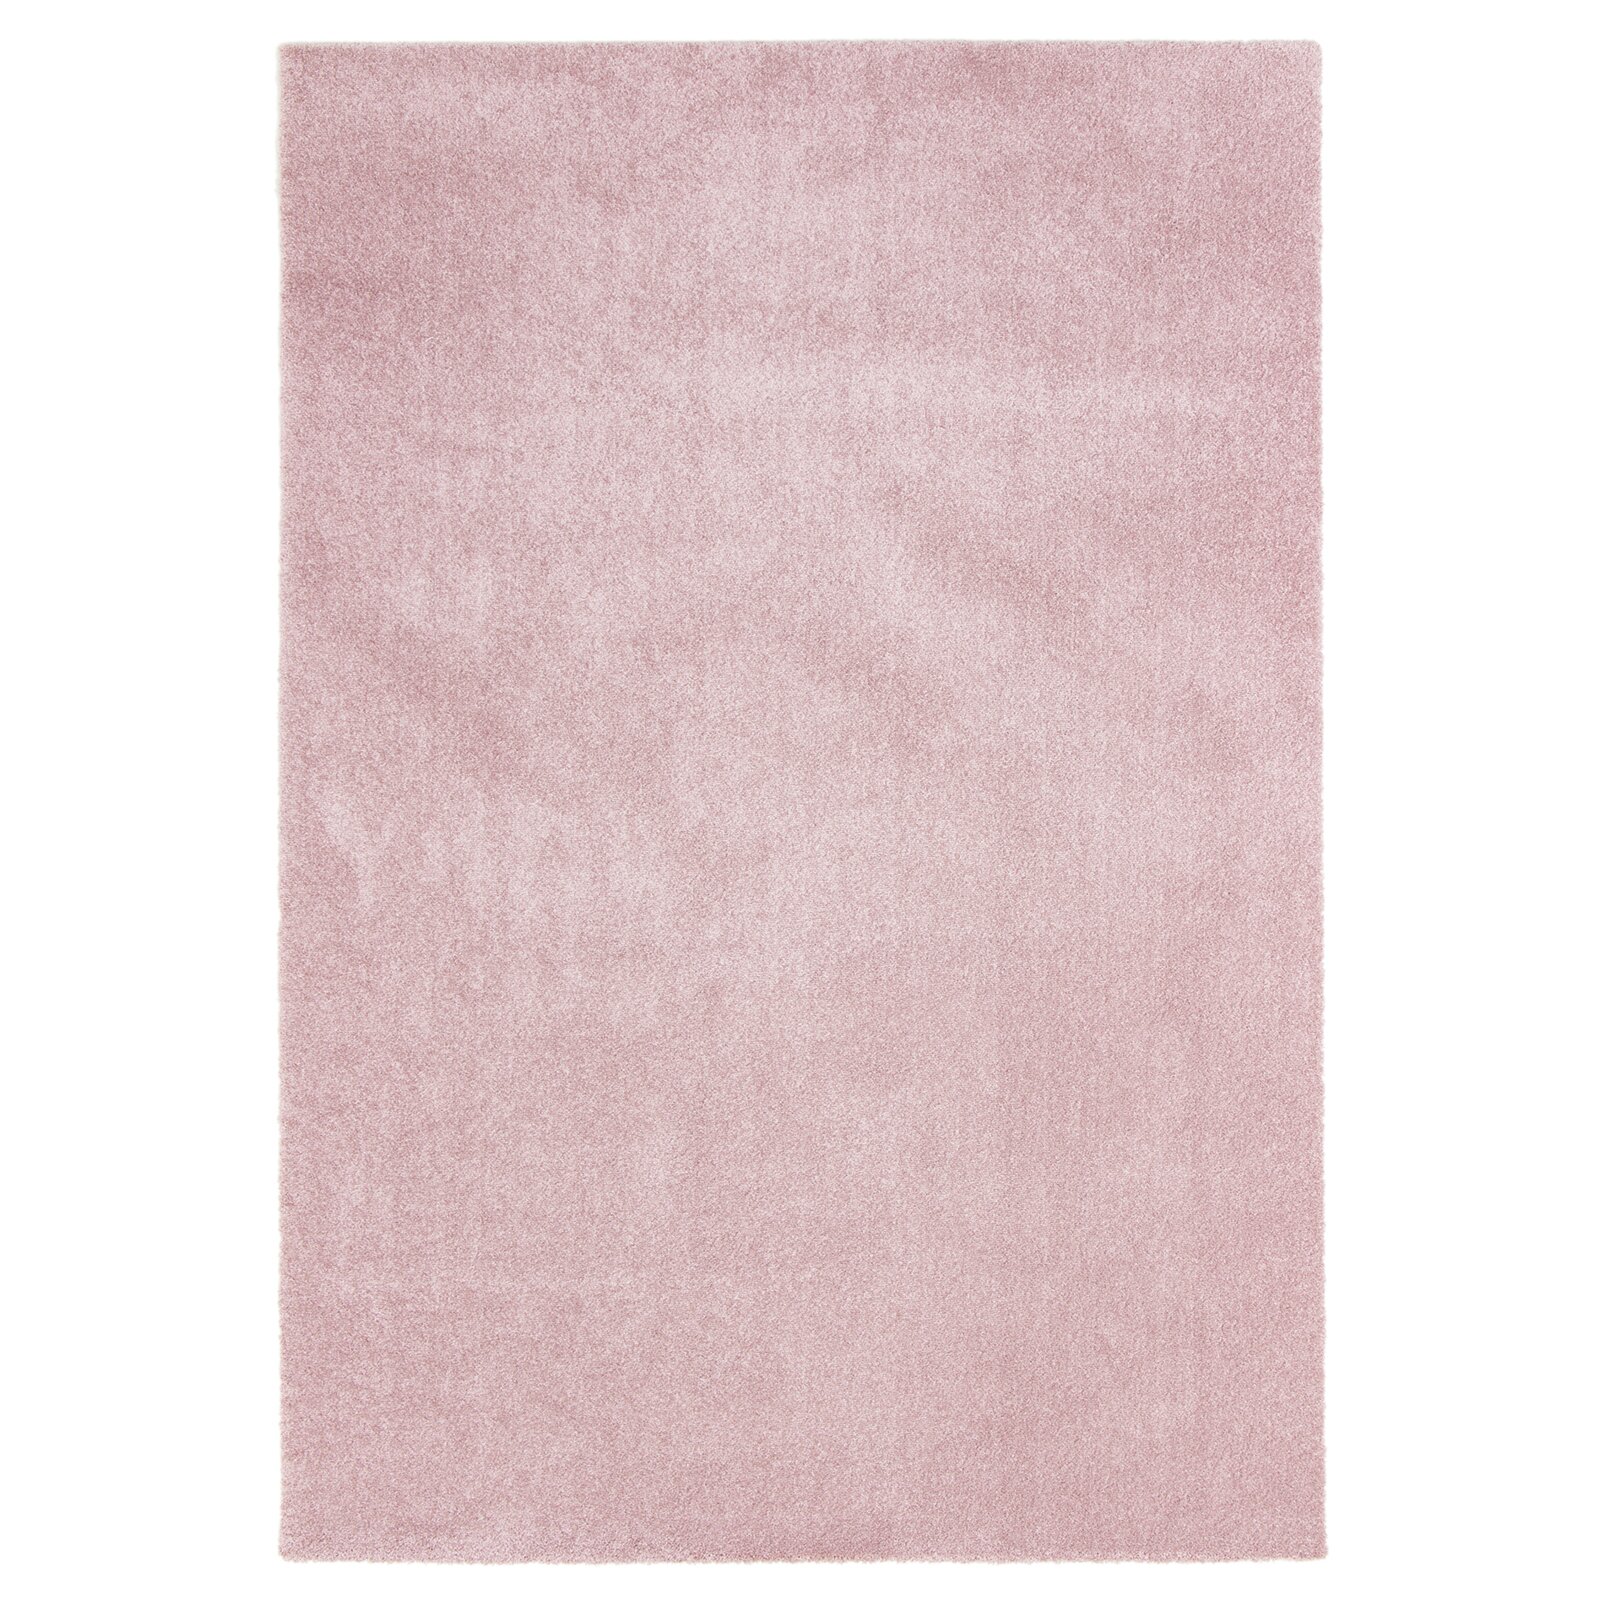 Teppich - rosa - 160x230 cm | Online bei ROLLER kaufen